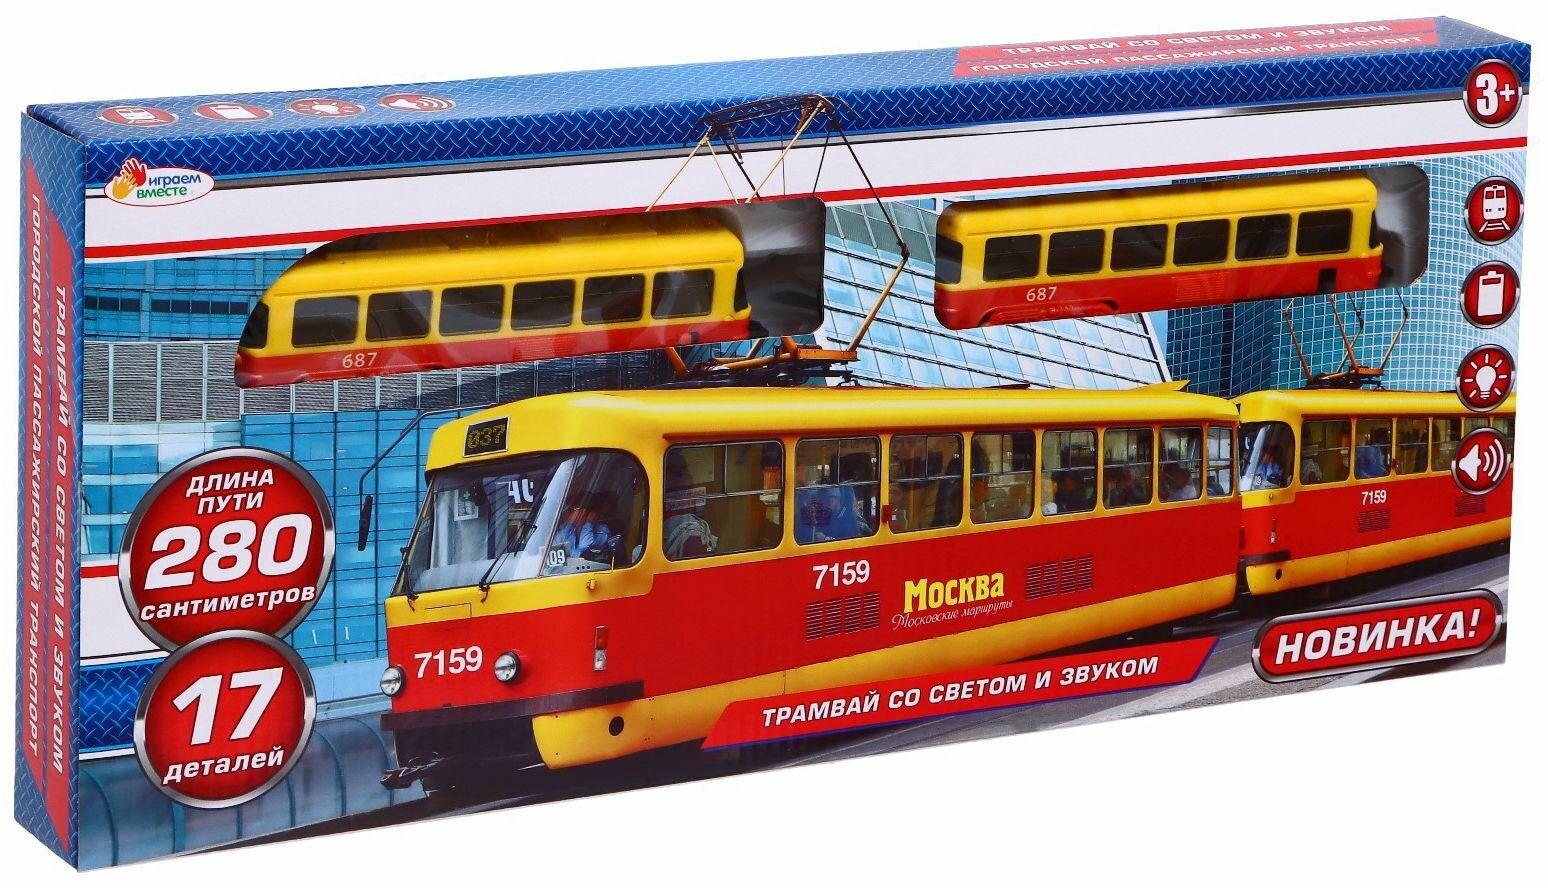 Детская игрушечная железная дорога "Трамвай" заводная, игрушечный транспорт со световыми и звуковыми эффектами, длина пути 280 см